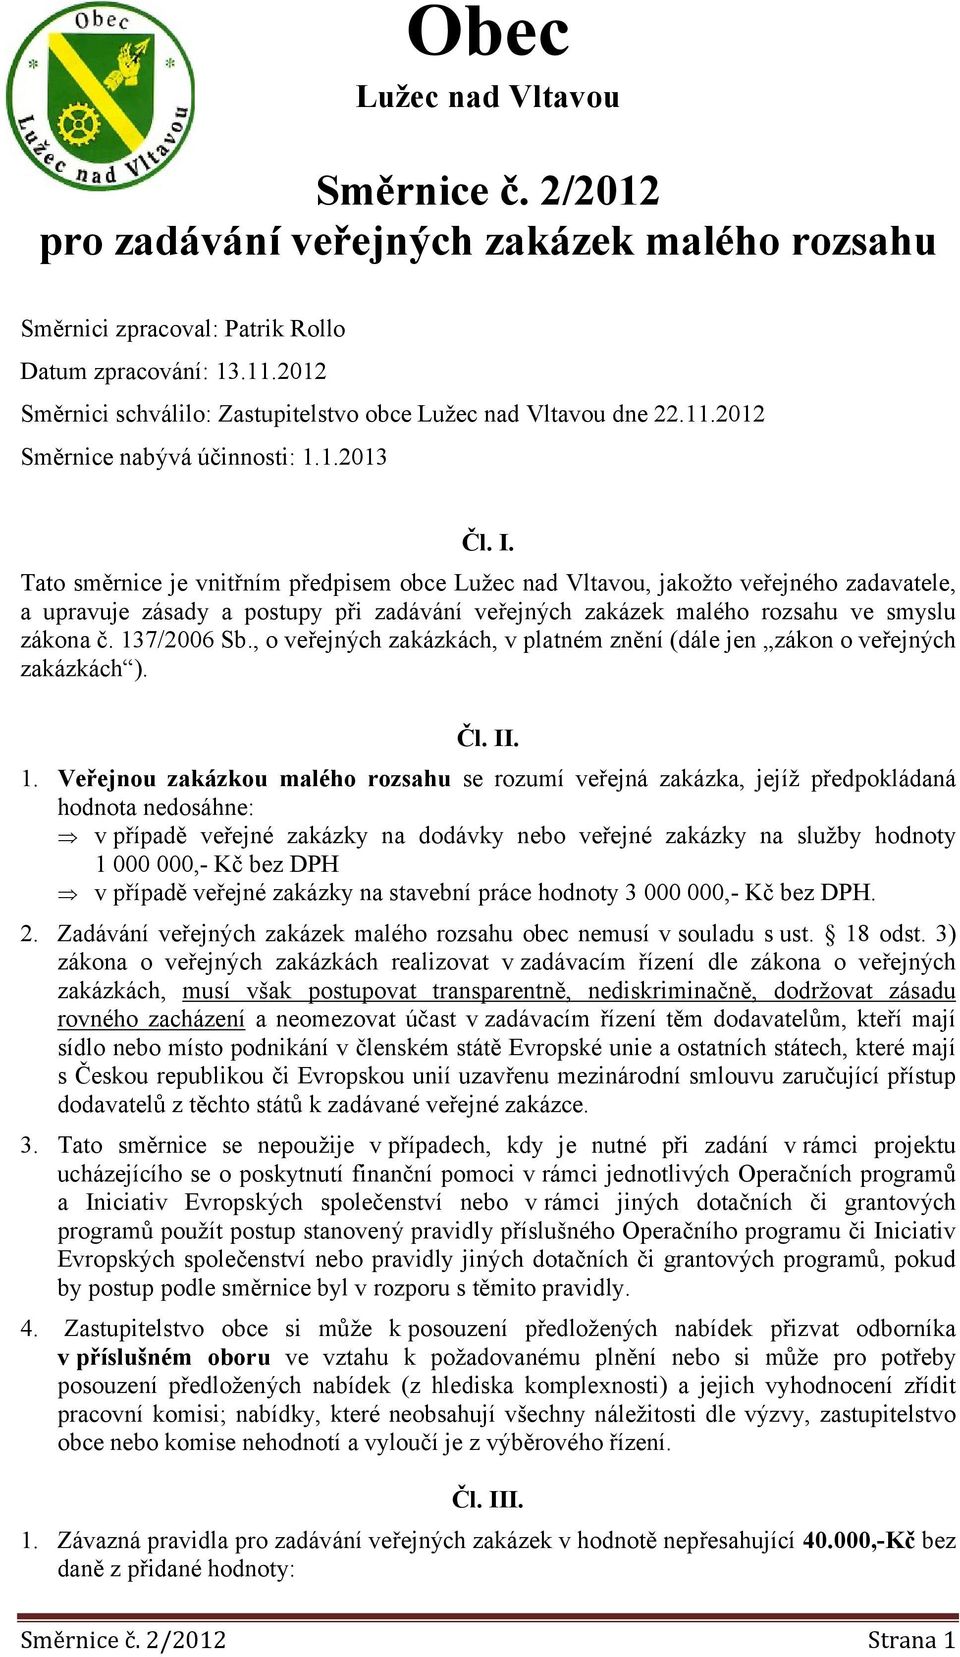 Tato směrnice je vnitřním předpisem obce Lužec nad Vltavou, jakožto veřejného zadavatele, a upravuje zásady a postupy při zadávání veřejných zakázek malého rozsahu ve smyslu zákona č. 137/2006 Sb.